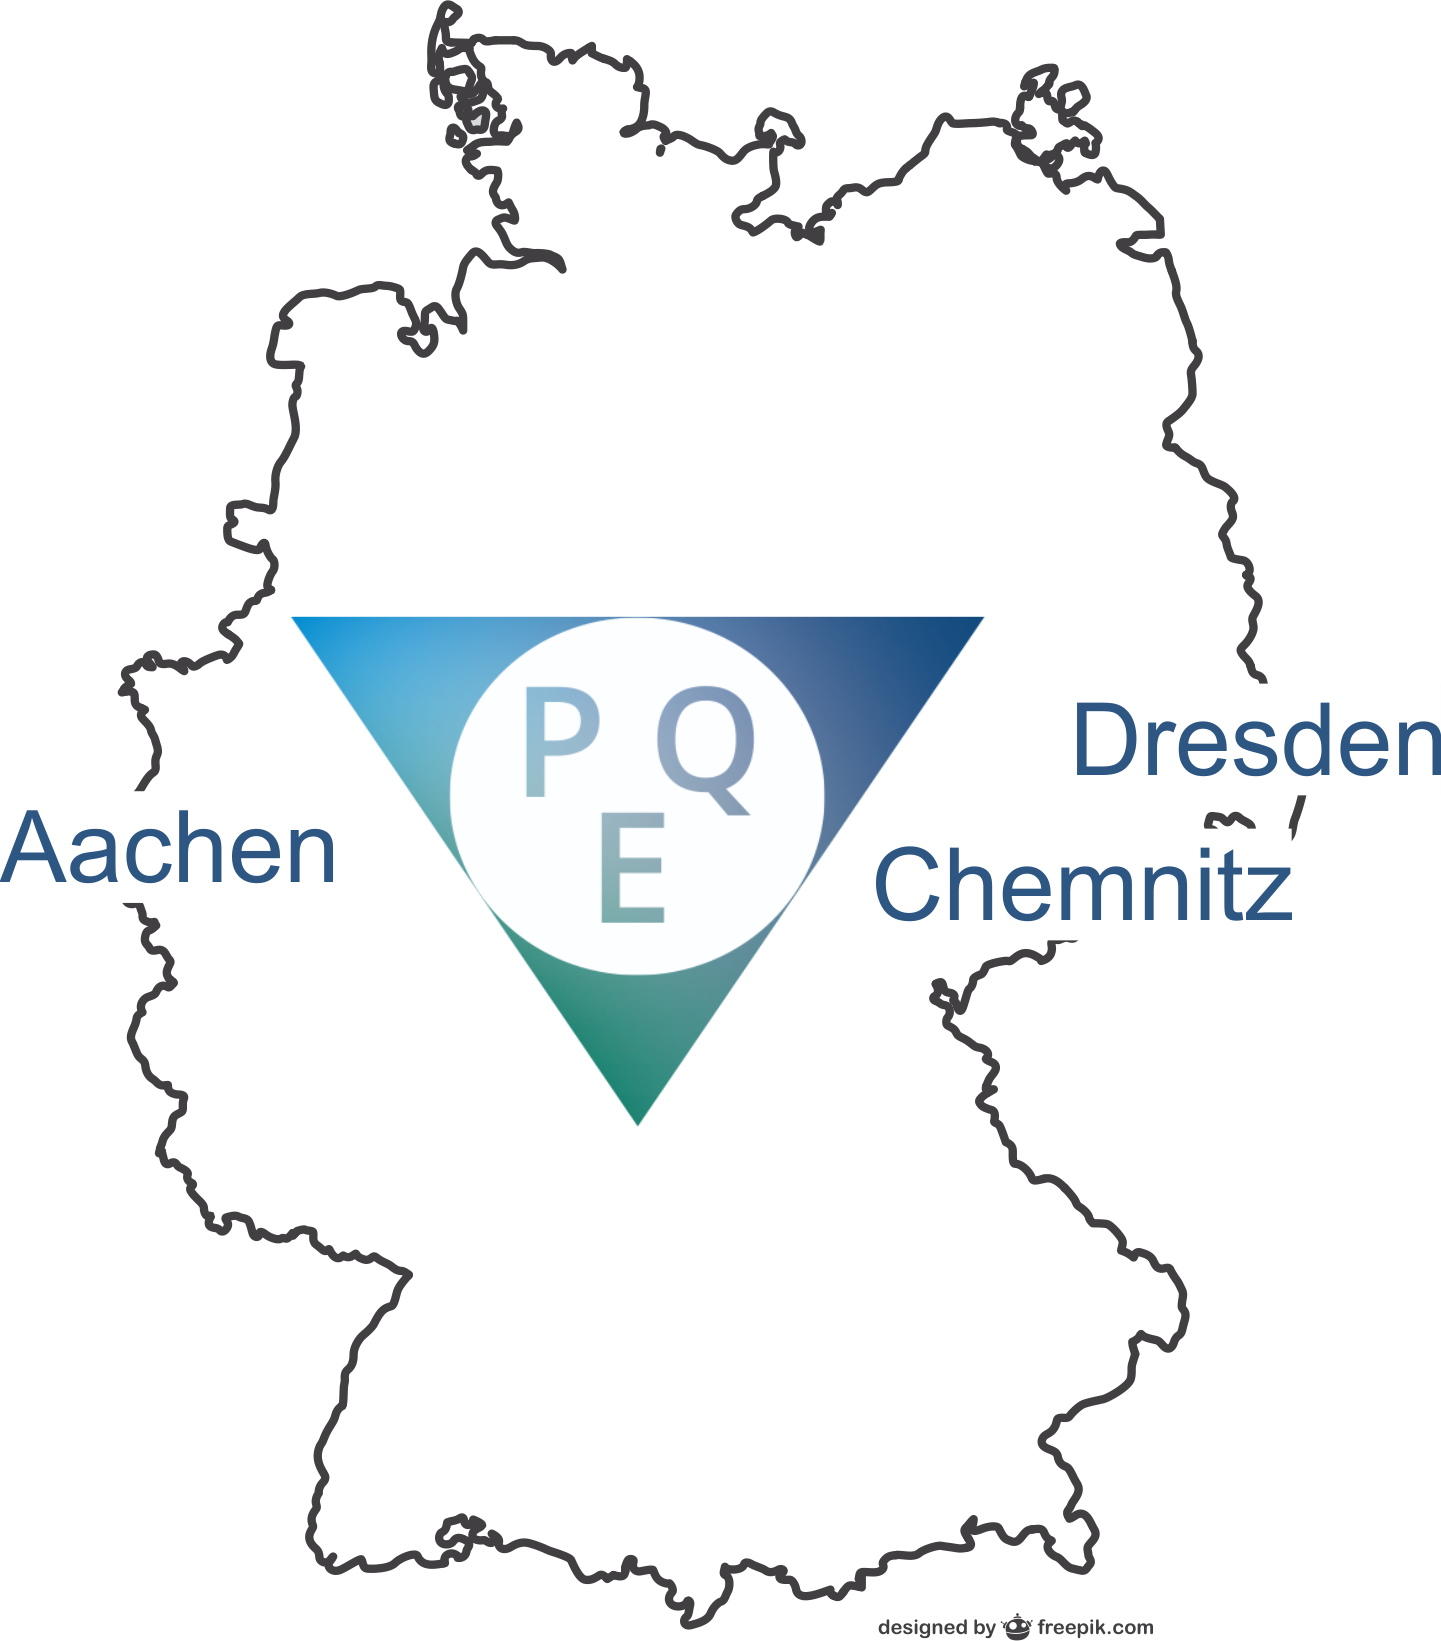 Deutschlandkarte mit den Standorten Dresden, Aachen und Chemnitz